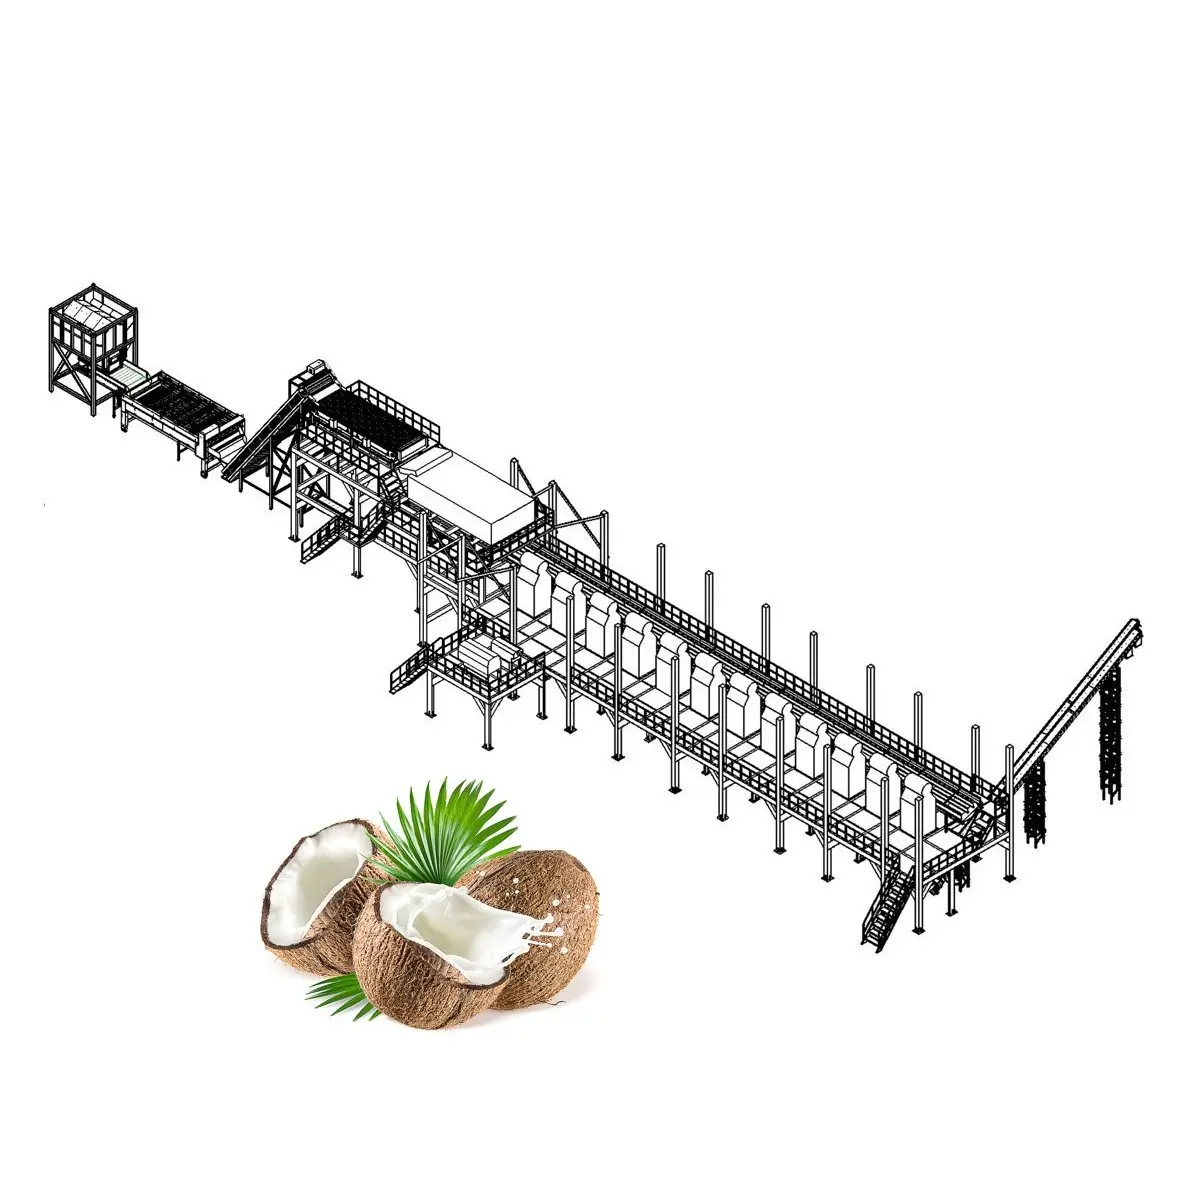 La leche de coco de la línea de producción de aceite de coco de la línea de producción de maquinaria de procesamiento de